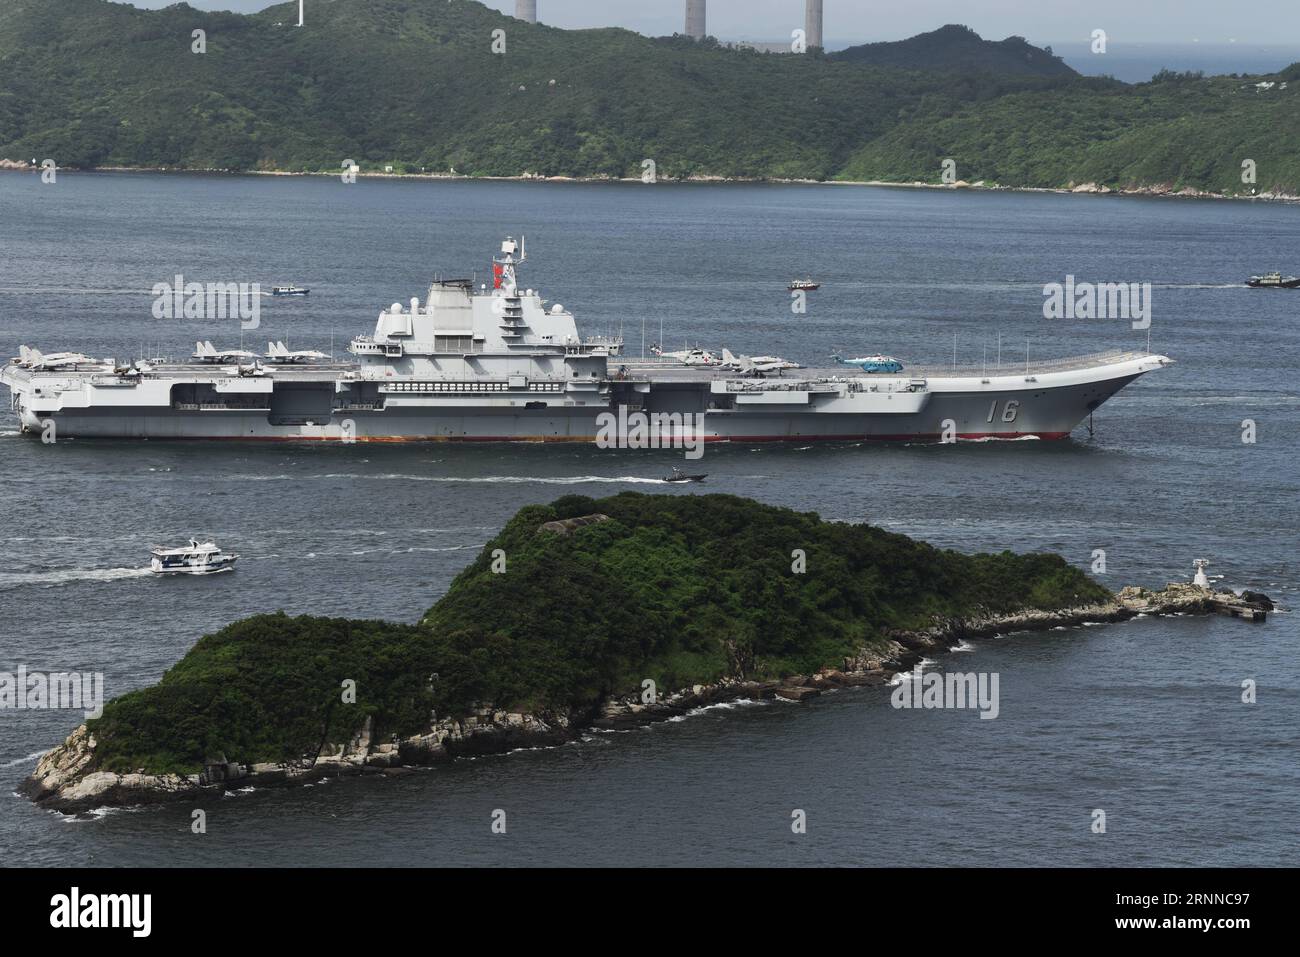 (170707) - HONG KONG, 7 luglio 2017 -- la portaerei cinese Liaoning naviga vicino all'isola Lamma a Hong Kong, Cina meridionale, 7 luglio 2017. ) (wyo) CHINA-HONG KONG- LIAONING AIRCRAFT CARRIER (CN) WangxShen PUBLICATIONxNOTxINxCHN Hong Kong 7 luglio 2017 Chinese Aircraft Carrier Liaoning NAVIGA vicino al Lamma Iceland a Hong Kong South China 7 luglio 2017 wyo China Hong Kong Liaoning Aircraft Carrier CN WangxShen PUBLICATIONxNOTxINxCHN Foto Stock